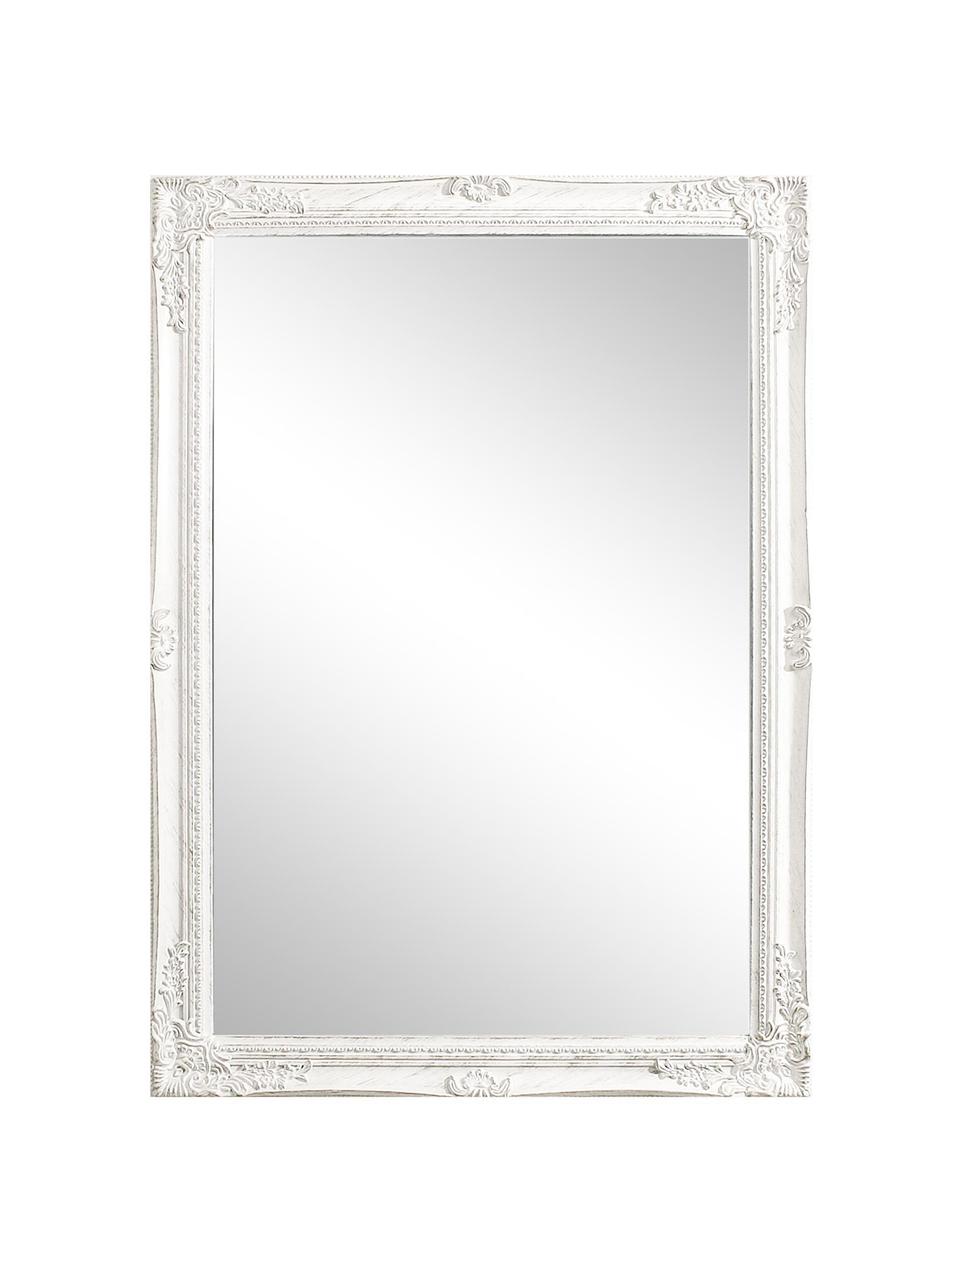 Eckiger Wandspiegel Miro mit weißem Paulowniaholzrahmen, Rahmen: Paulowniaholz, beschichte, Spiegelfläche: Spiegelglas, Weiß, B 72 x H 102 cm